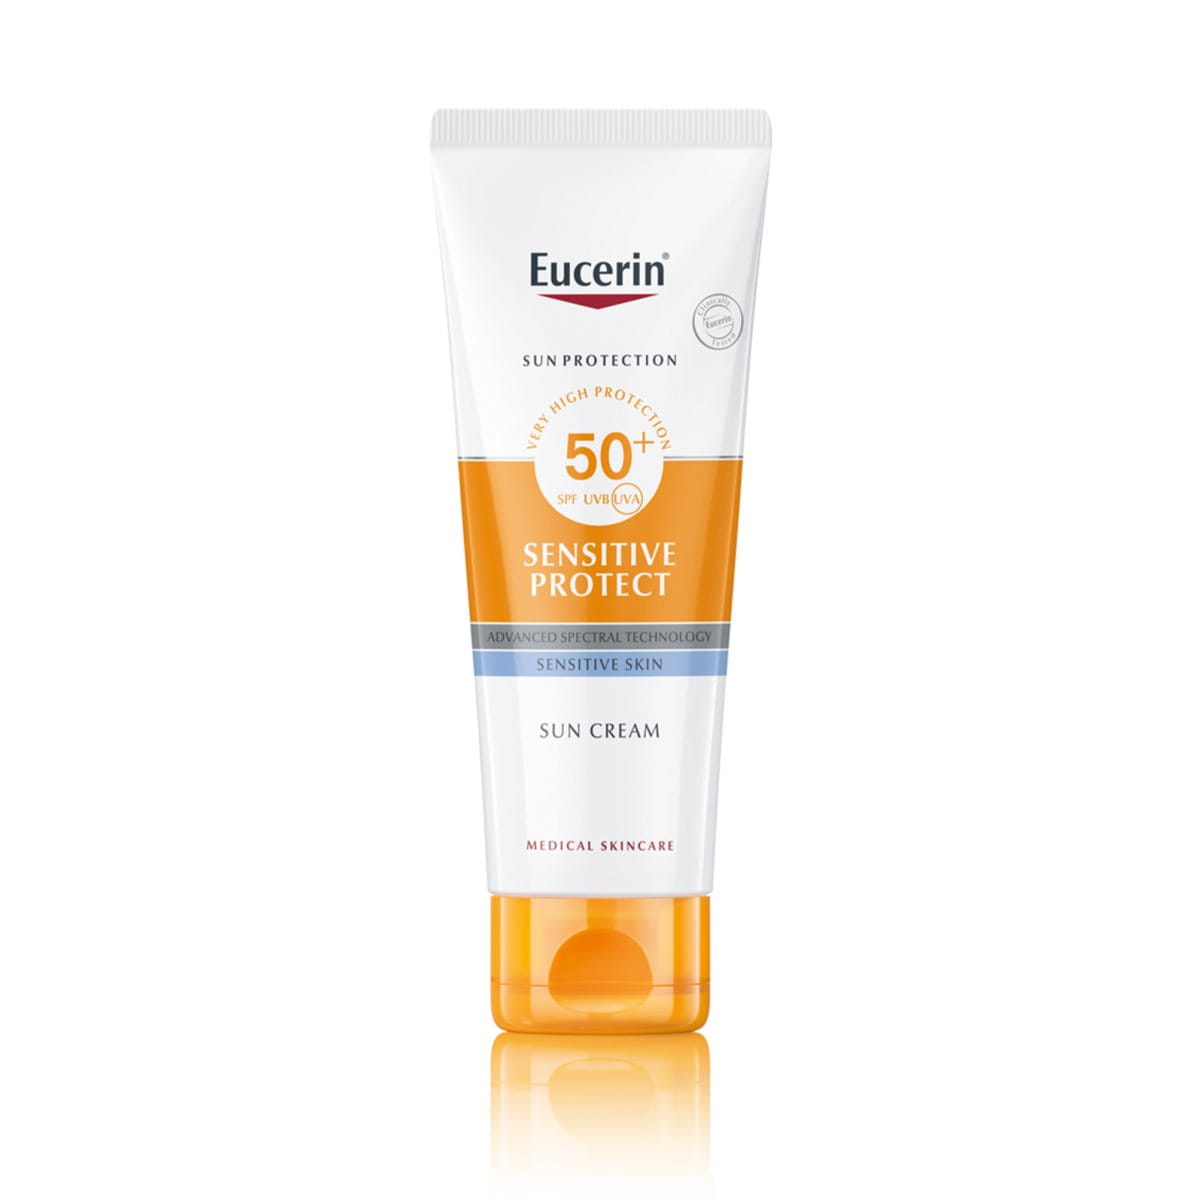 Слънцезащитен крем Sensitive Protect SPF 50+ | слънцезащитен крем за чувствителна, суха кожа | Eucerin